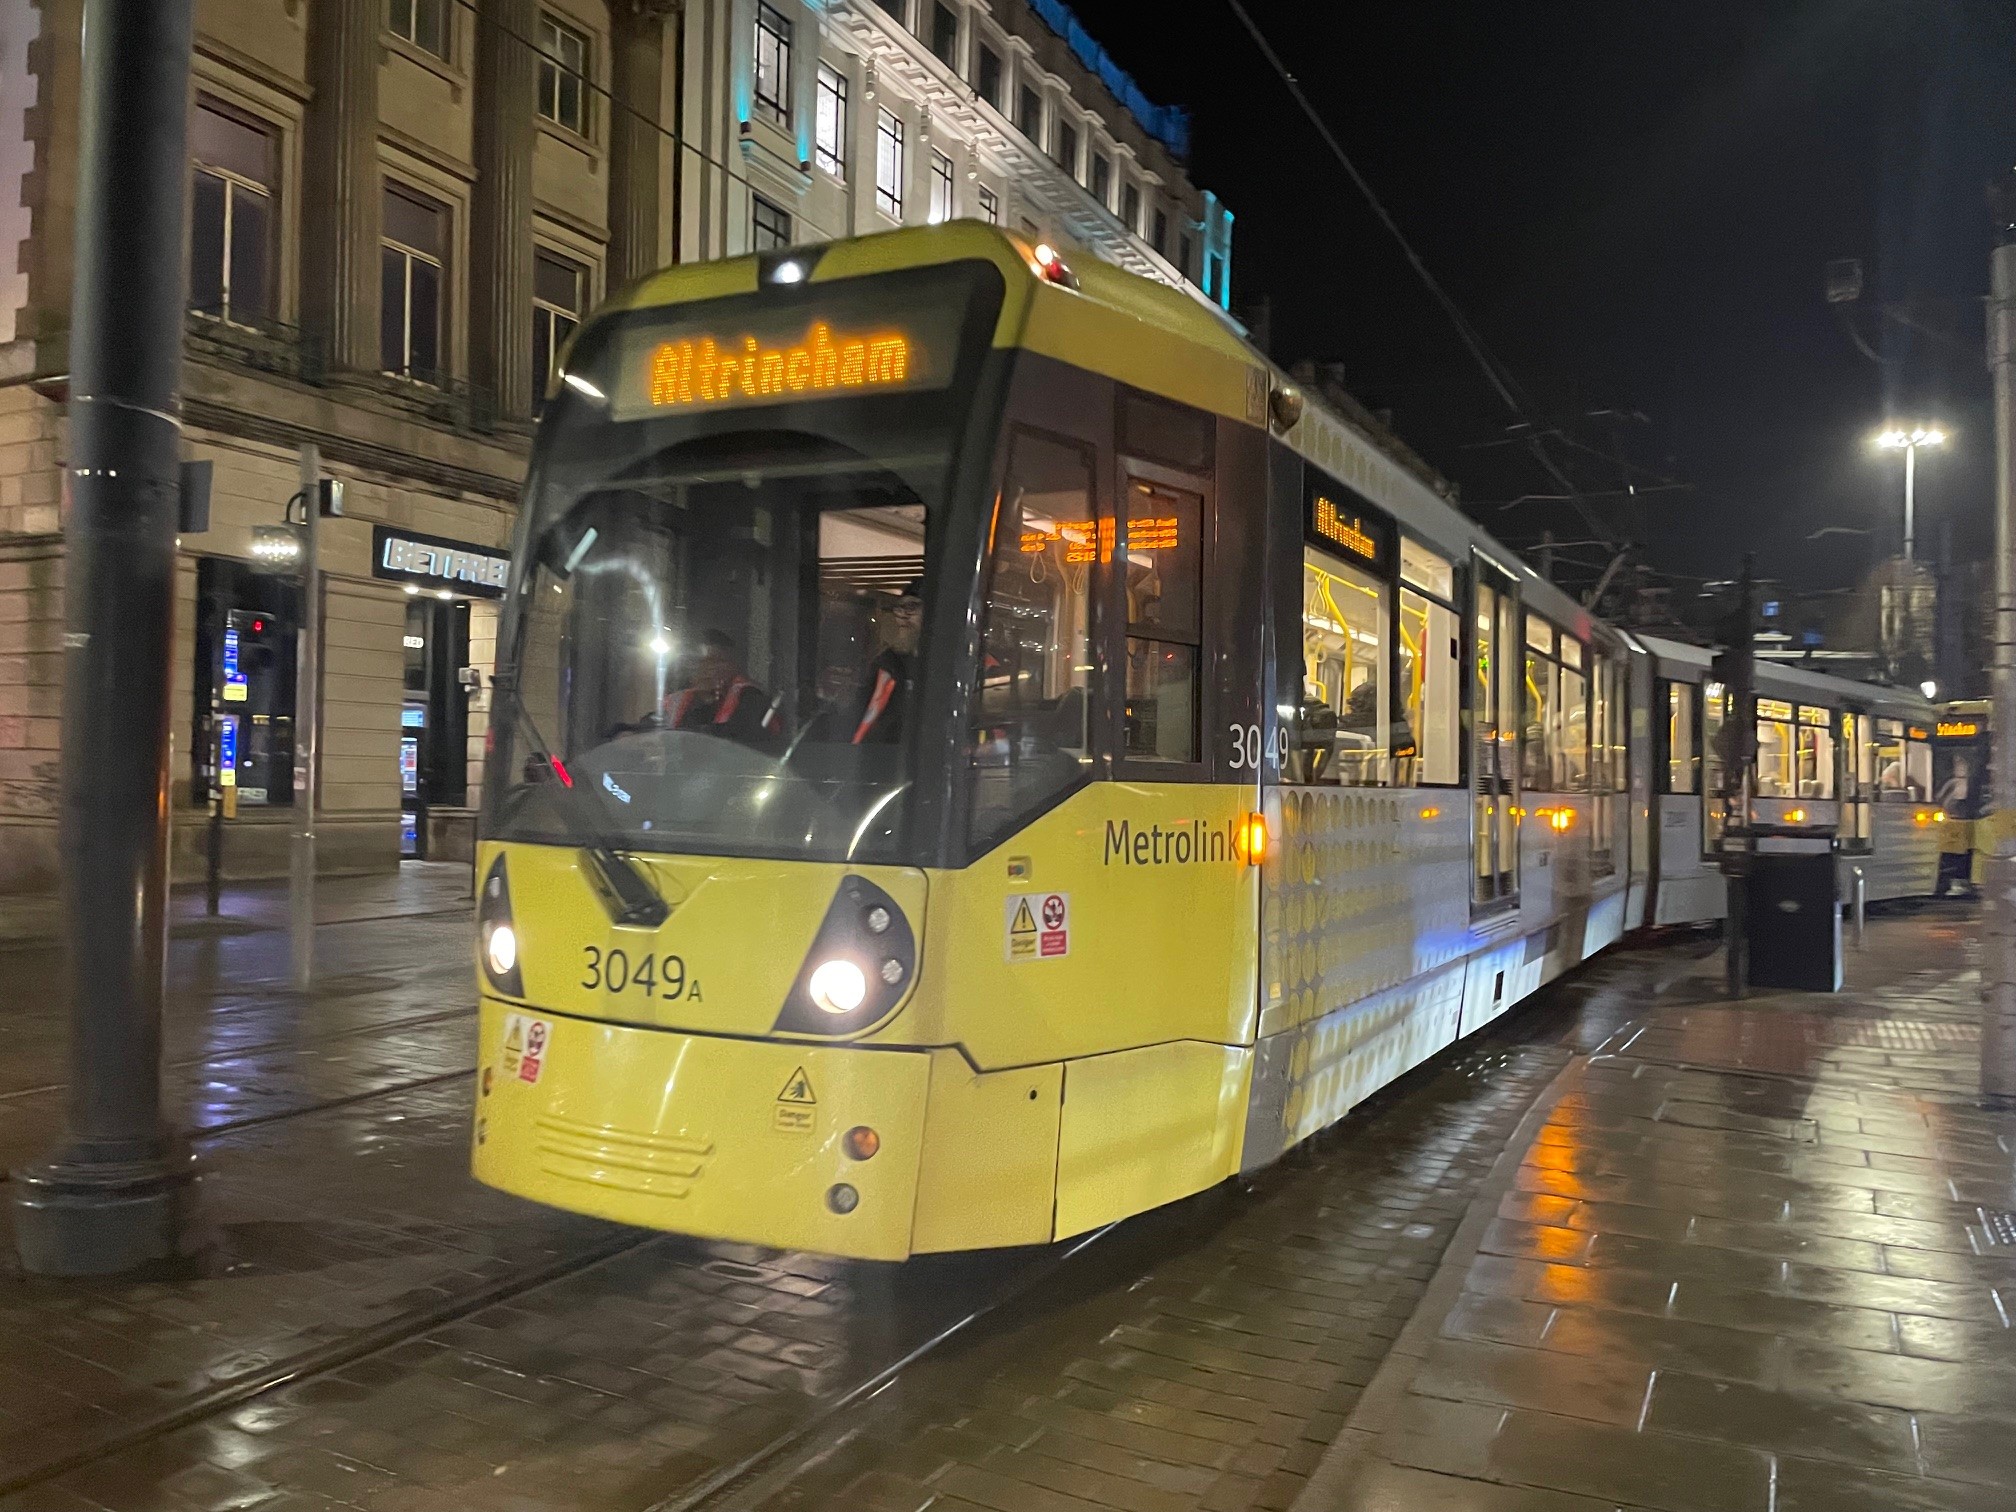 Journey Manchester tram planner MaaS app (© ITS International | Adam Hill)